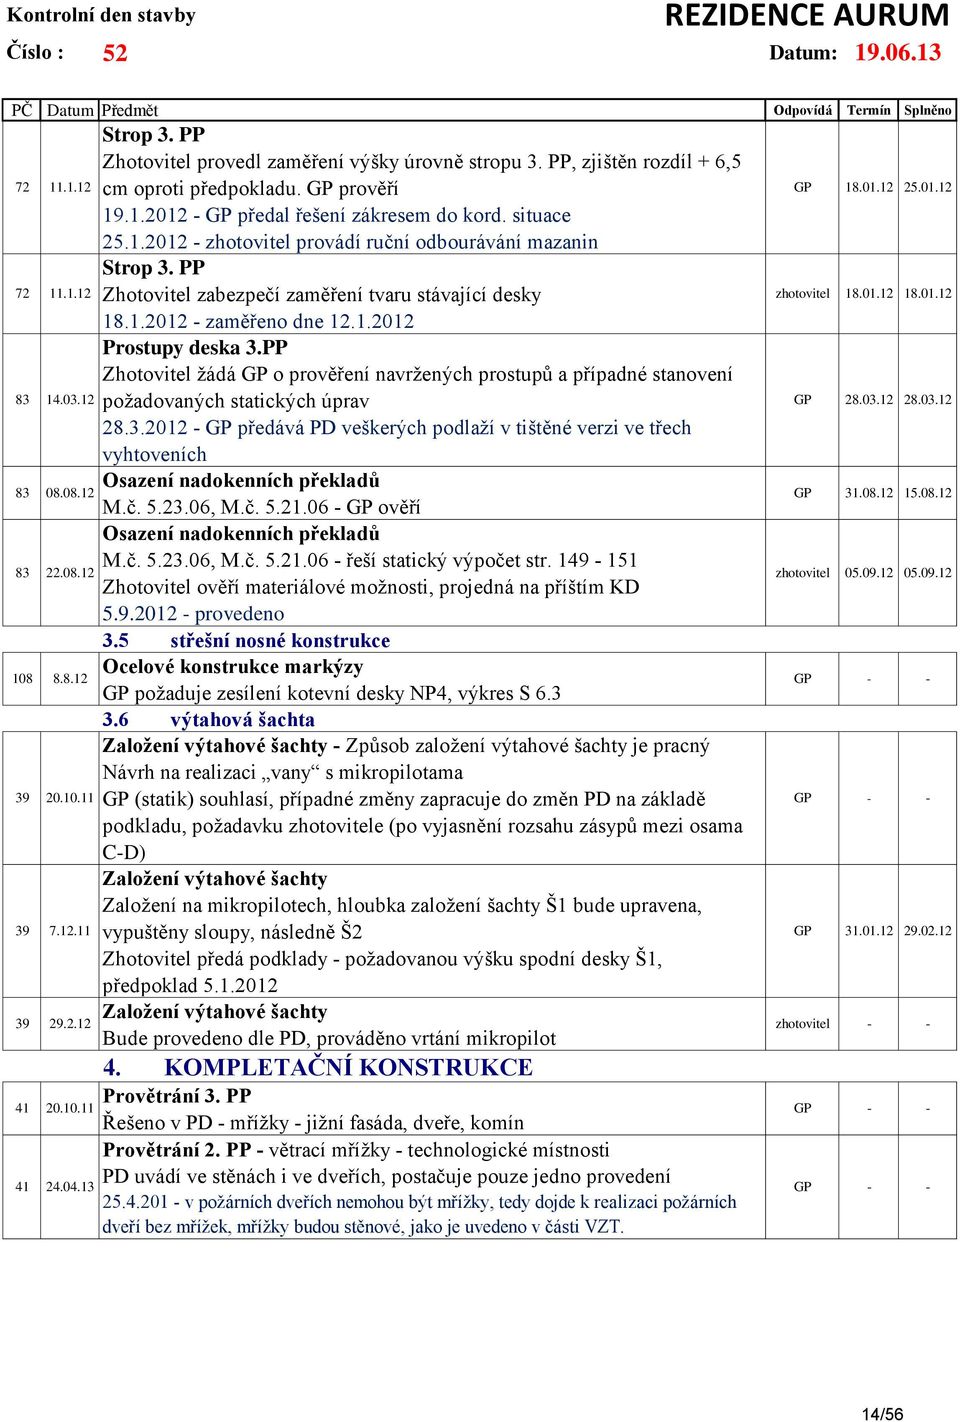 PP Zhotovitel zabezpečí zaměření tvaru stávající desky 18.1.2012 - zaměřeno dne 12.1.2012 Prostupy deska 3.